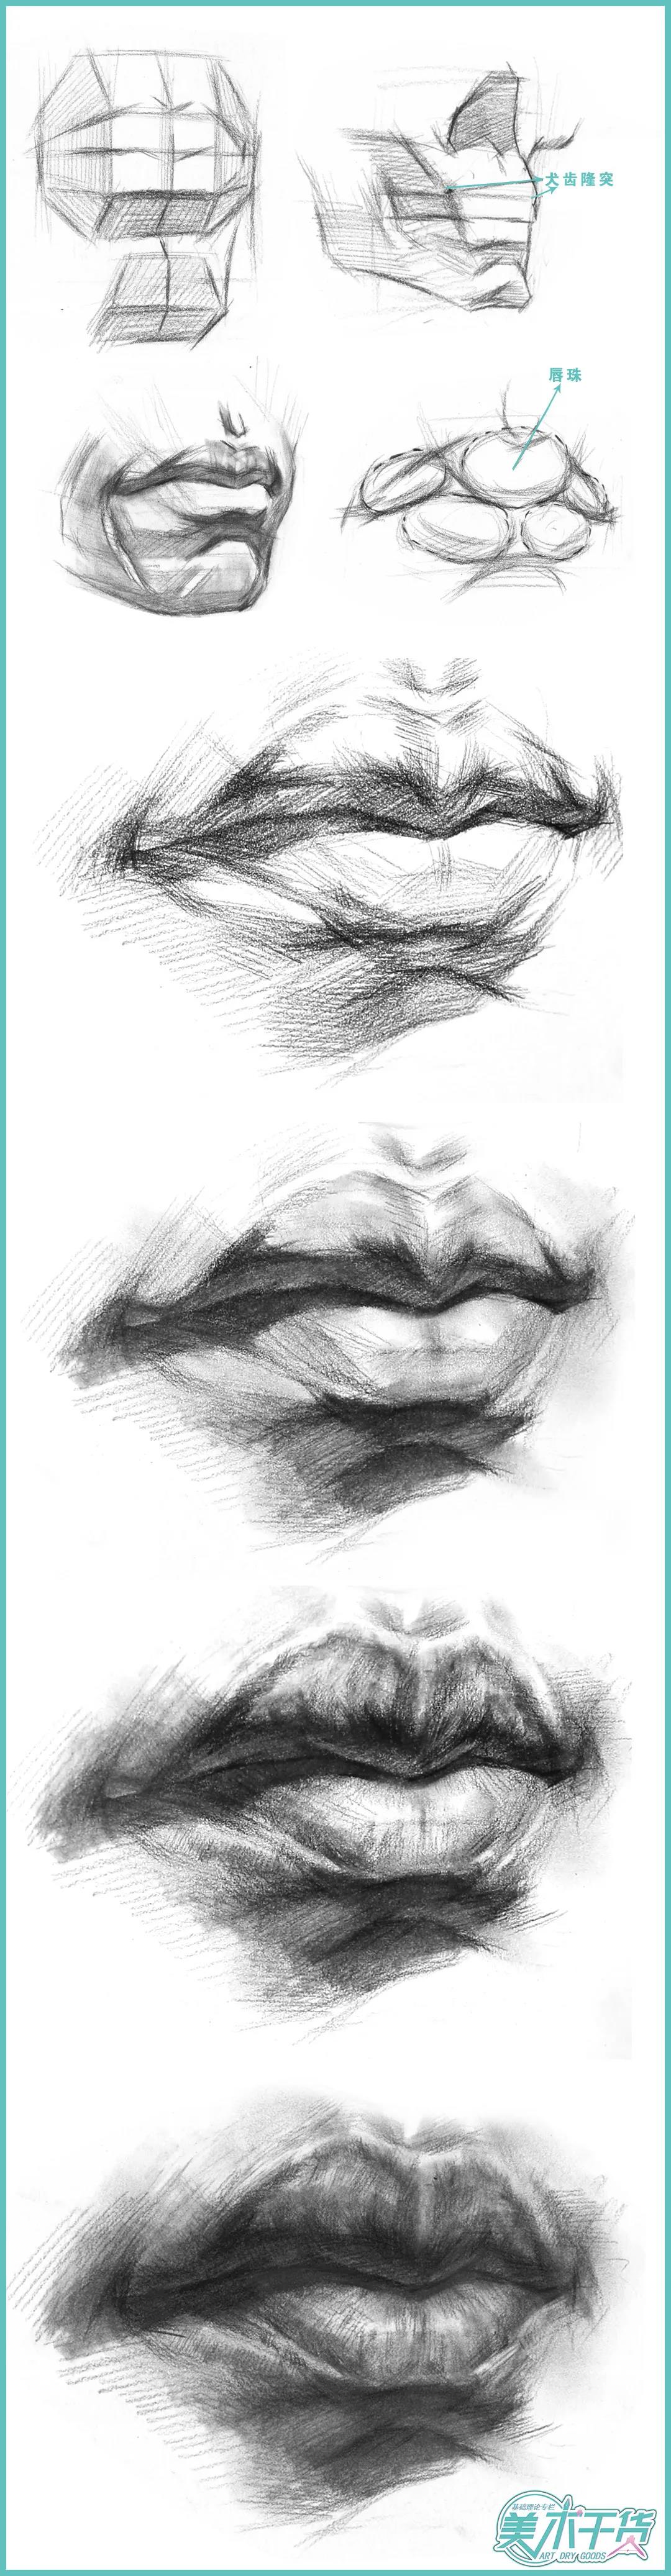 素描半身像想画好一张嘴你对嘴巴的结构足够清楚吗